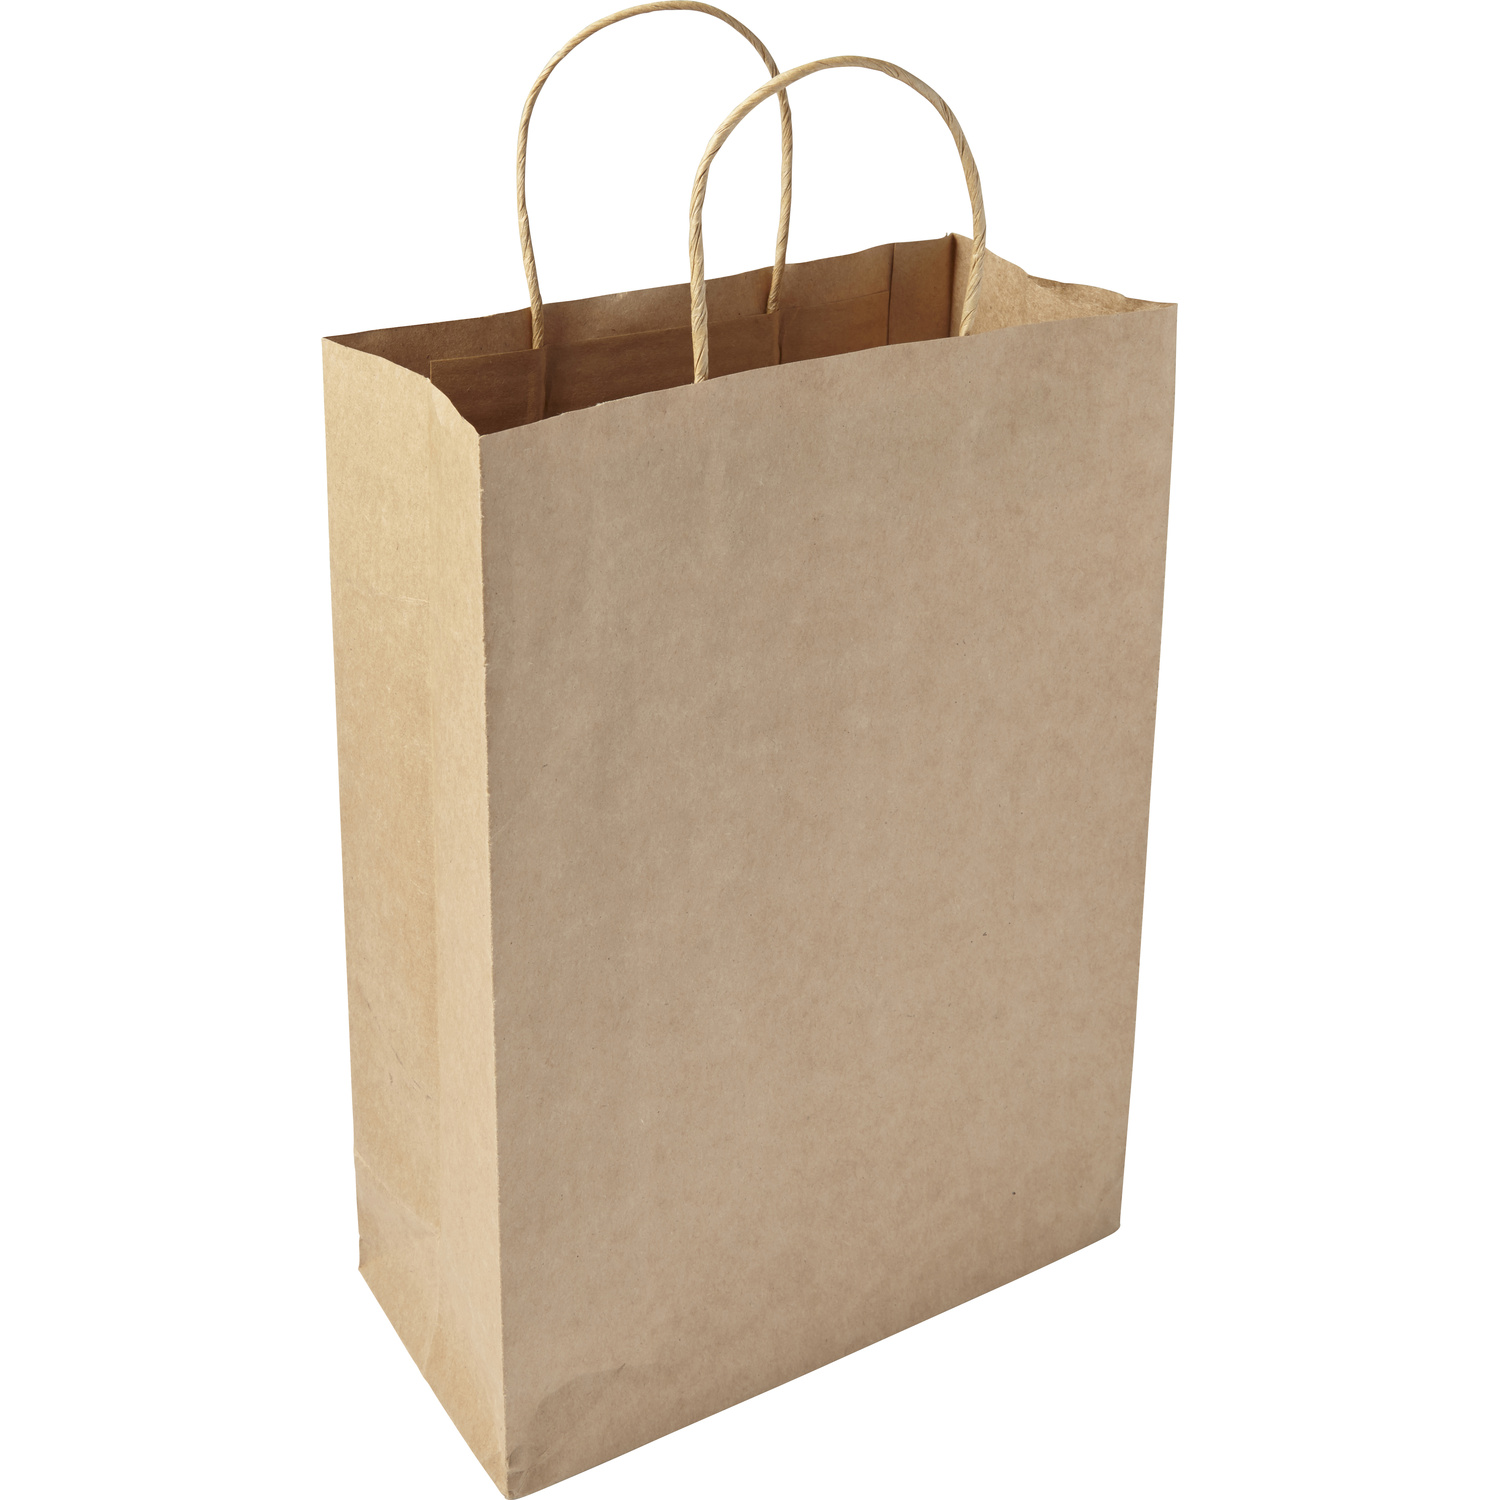 007842 011999999 3d135 lft pro01 fal - Paper bag (large)